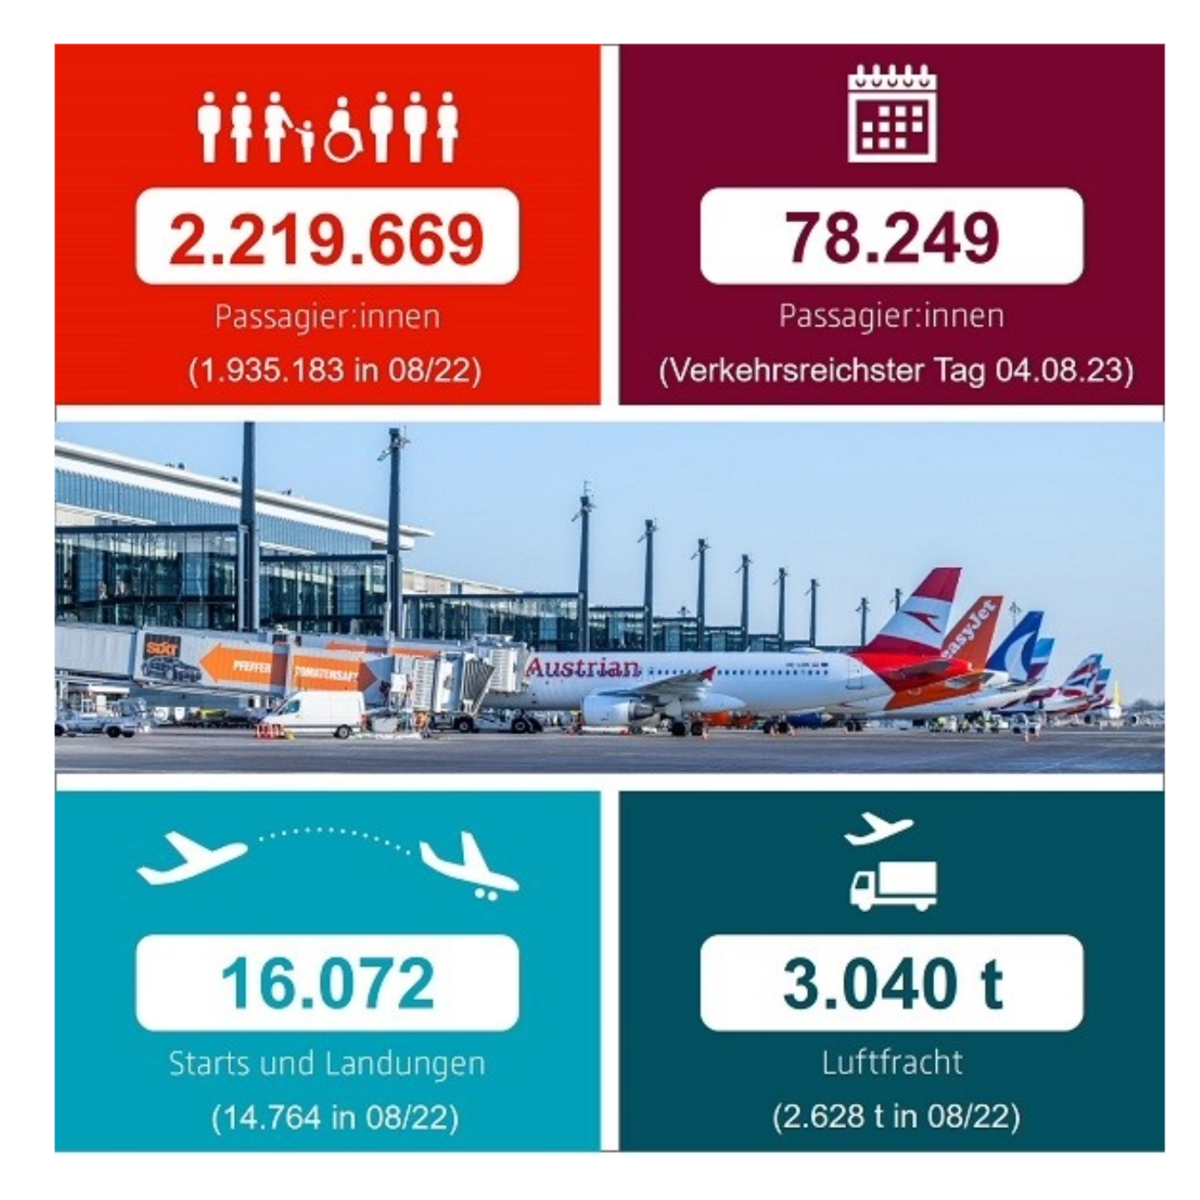 Bild zeigt eine Infografik zum Aktuellen Verkehrsbericht des Flughafen Berlin Brandenburg BER.